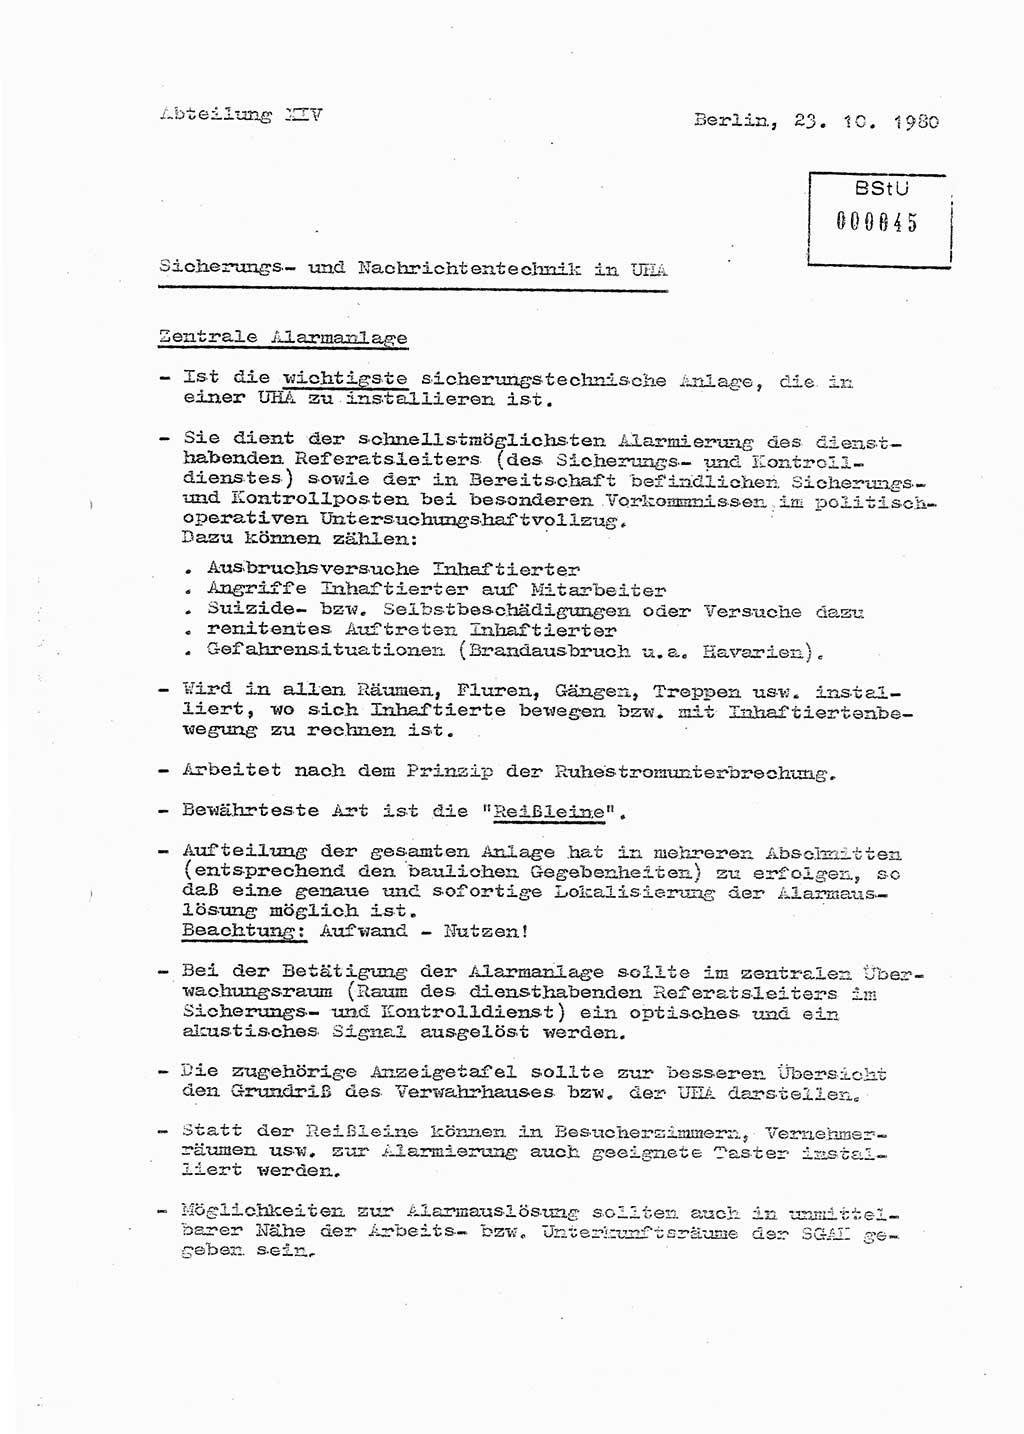 Sicherungs- und Nachrichtentechnik in UHA [Untersuchungshaftanstalten, Ministerium für Staatssicherheit, Deutsche Demokratische Republik (DDR)], Abteilung (Abt.) ⅩⅣ, Berlin 1980, Seite 1 (Si.-NT UHA MfS DDR Abt. ⅩⅣ /80 1980, S. 1)